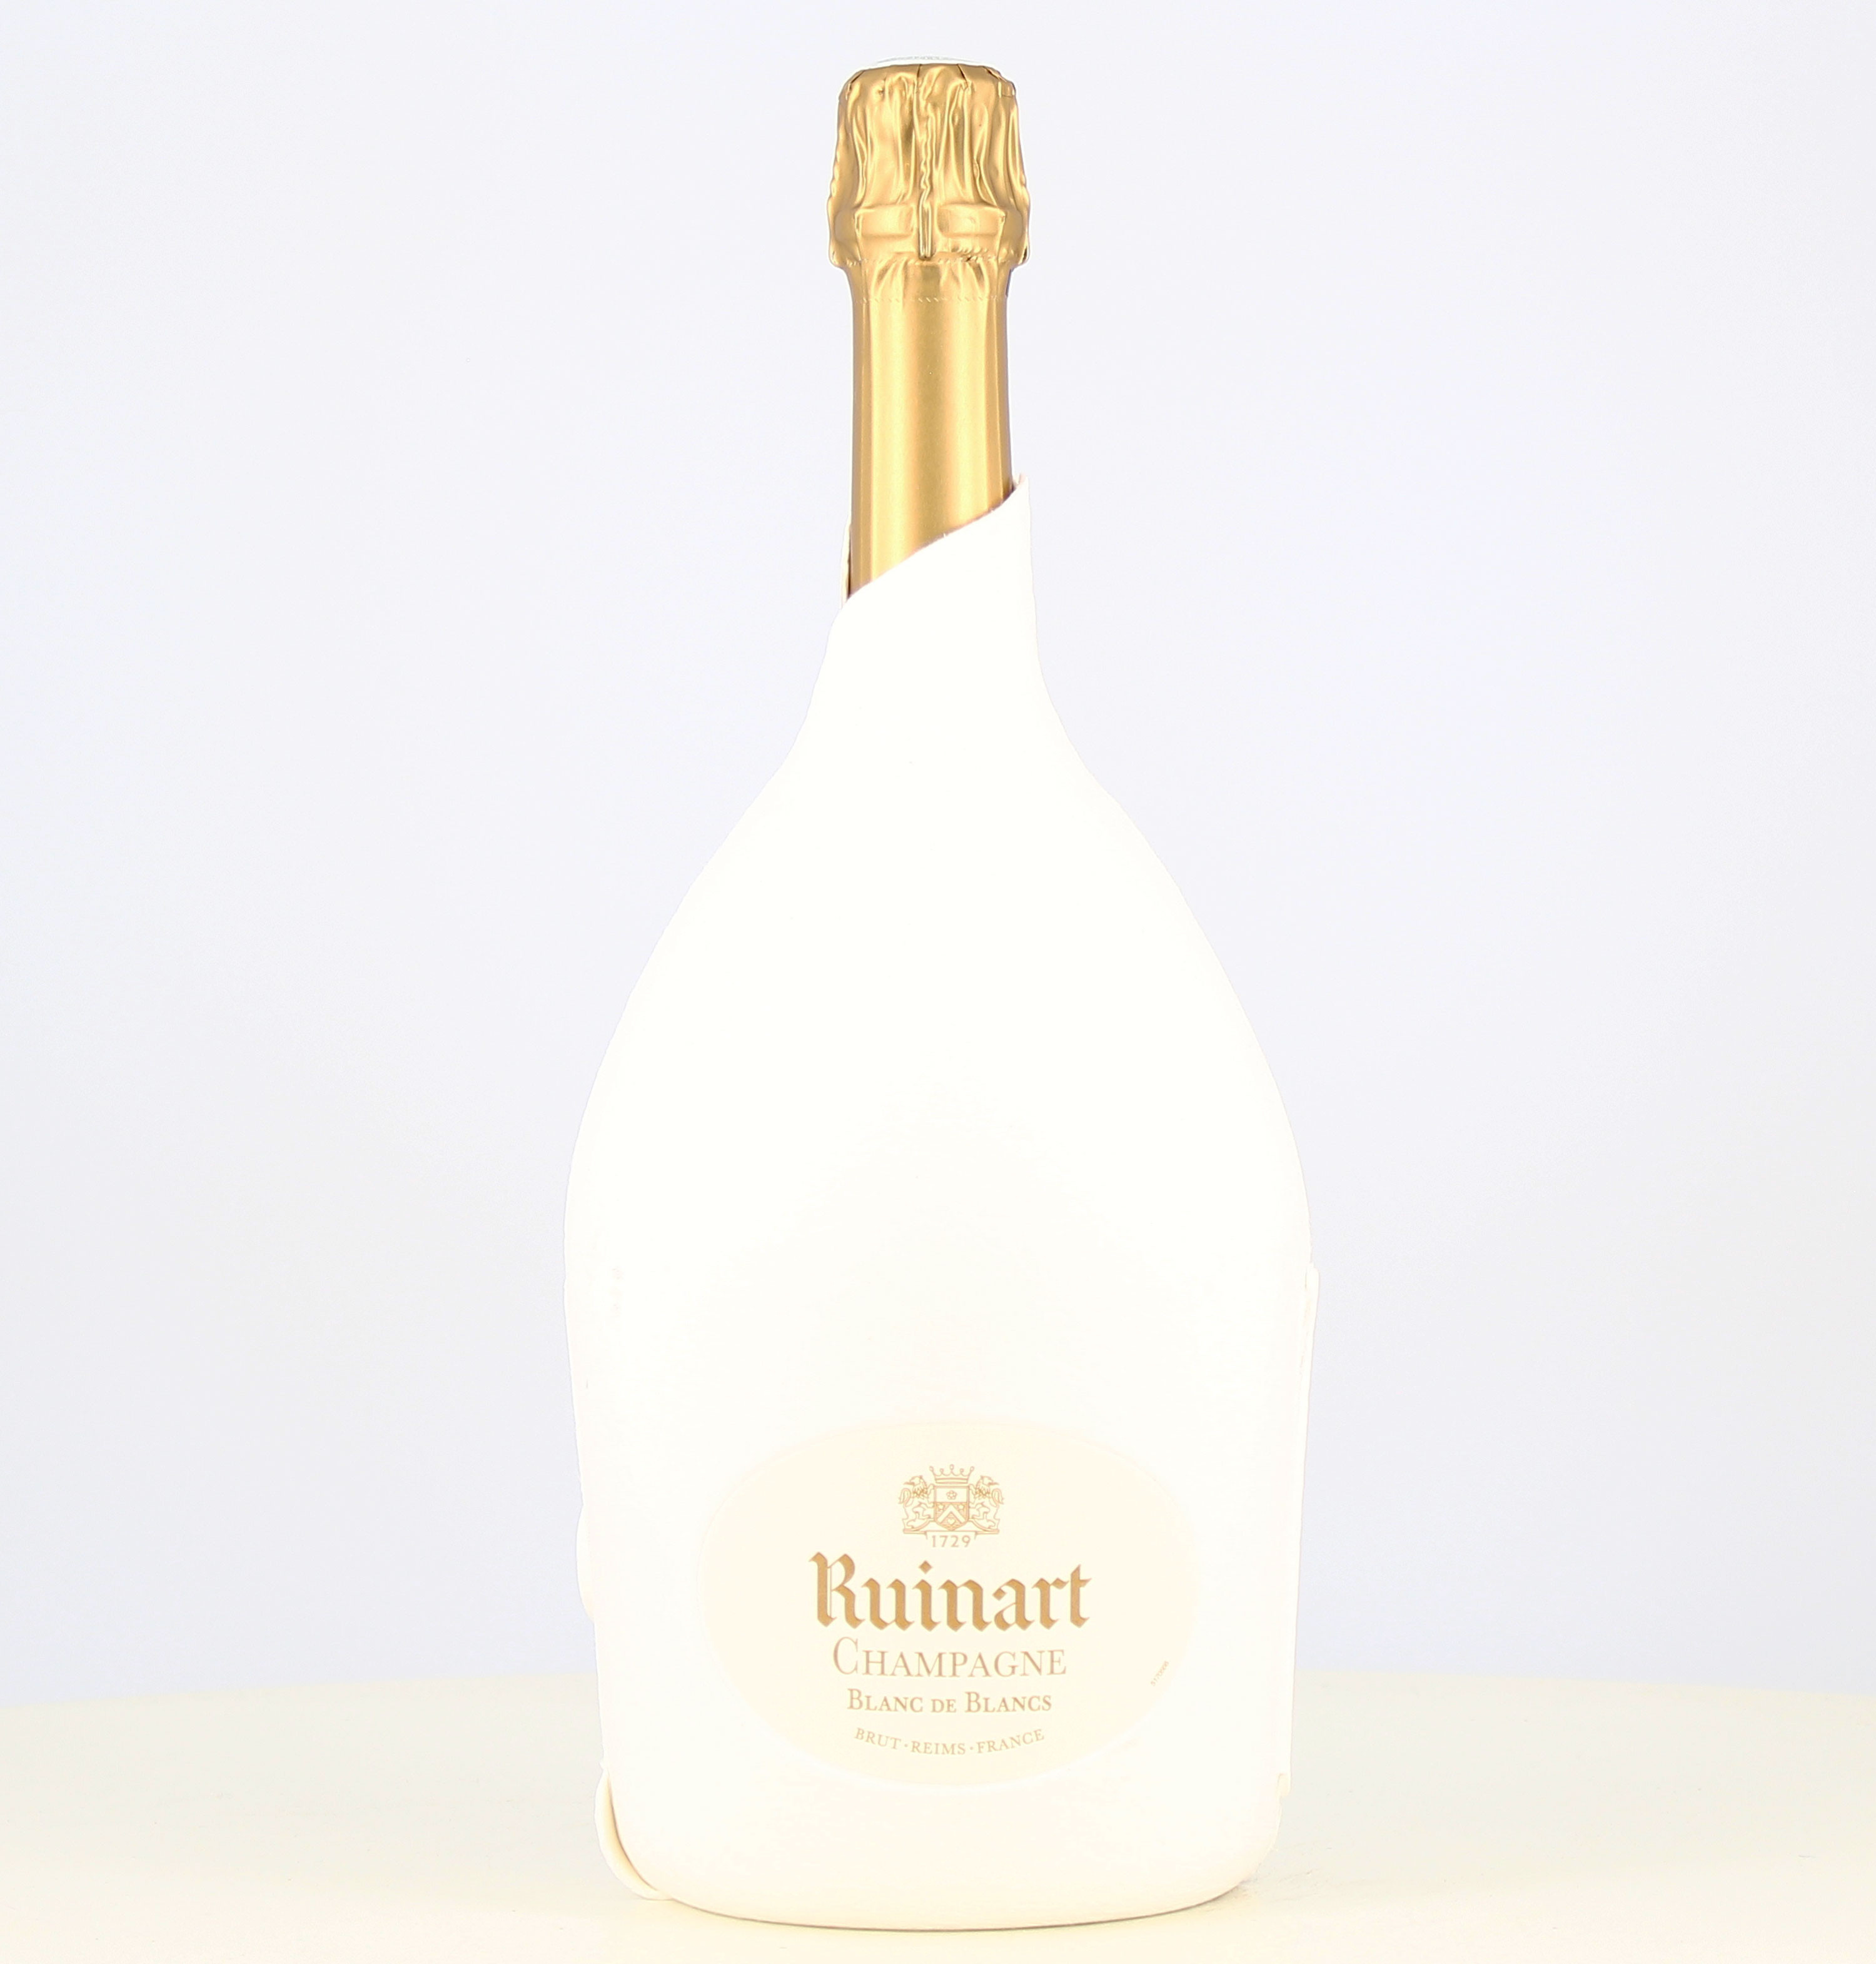 CHAMPAGNE RUINART - Achat de champagne rosé, blanc ou brut au meilleur prix